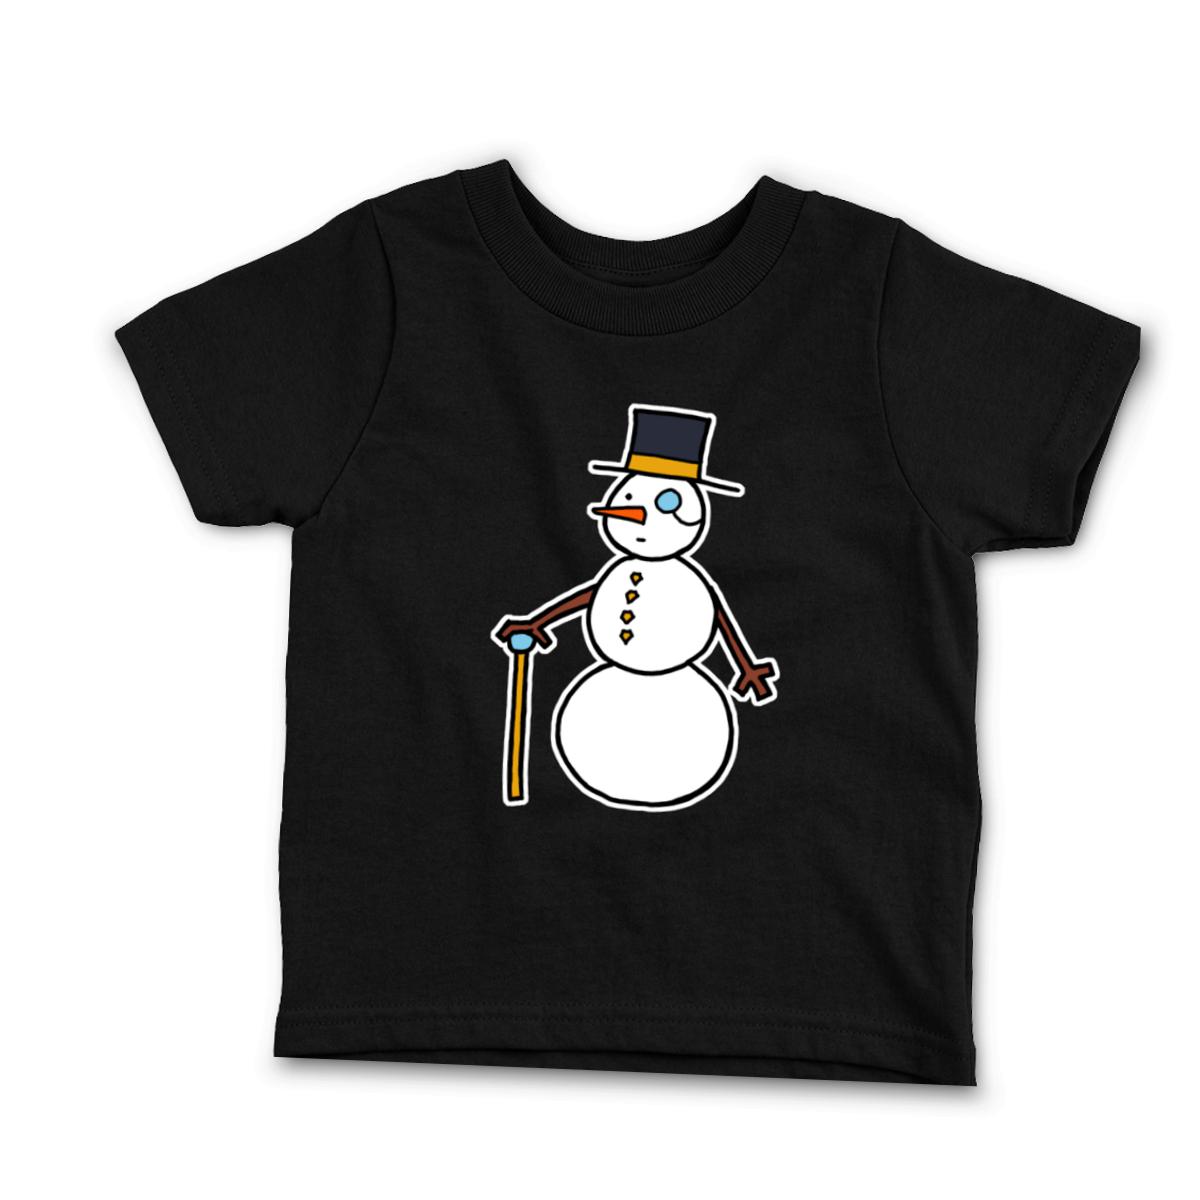 Dapper Snowman Toddler Tee 2T black